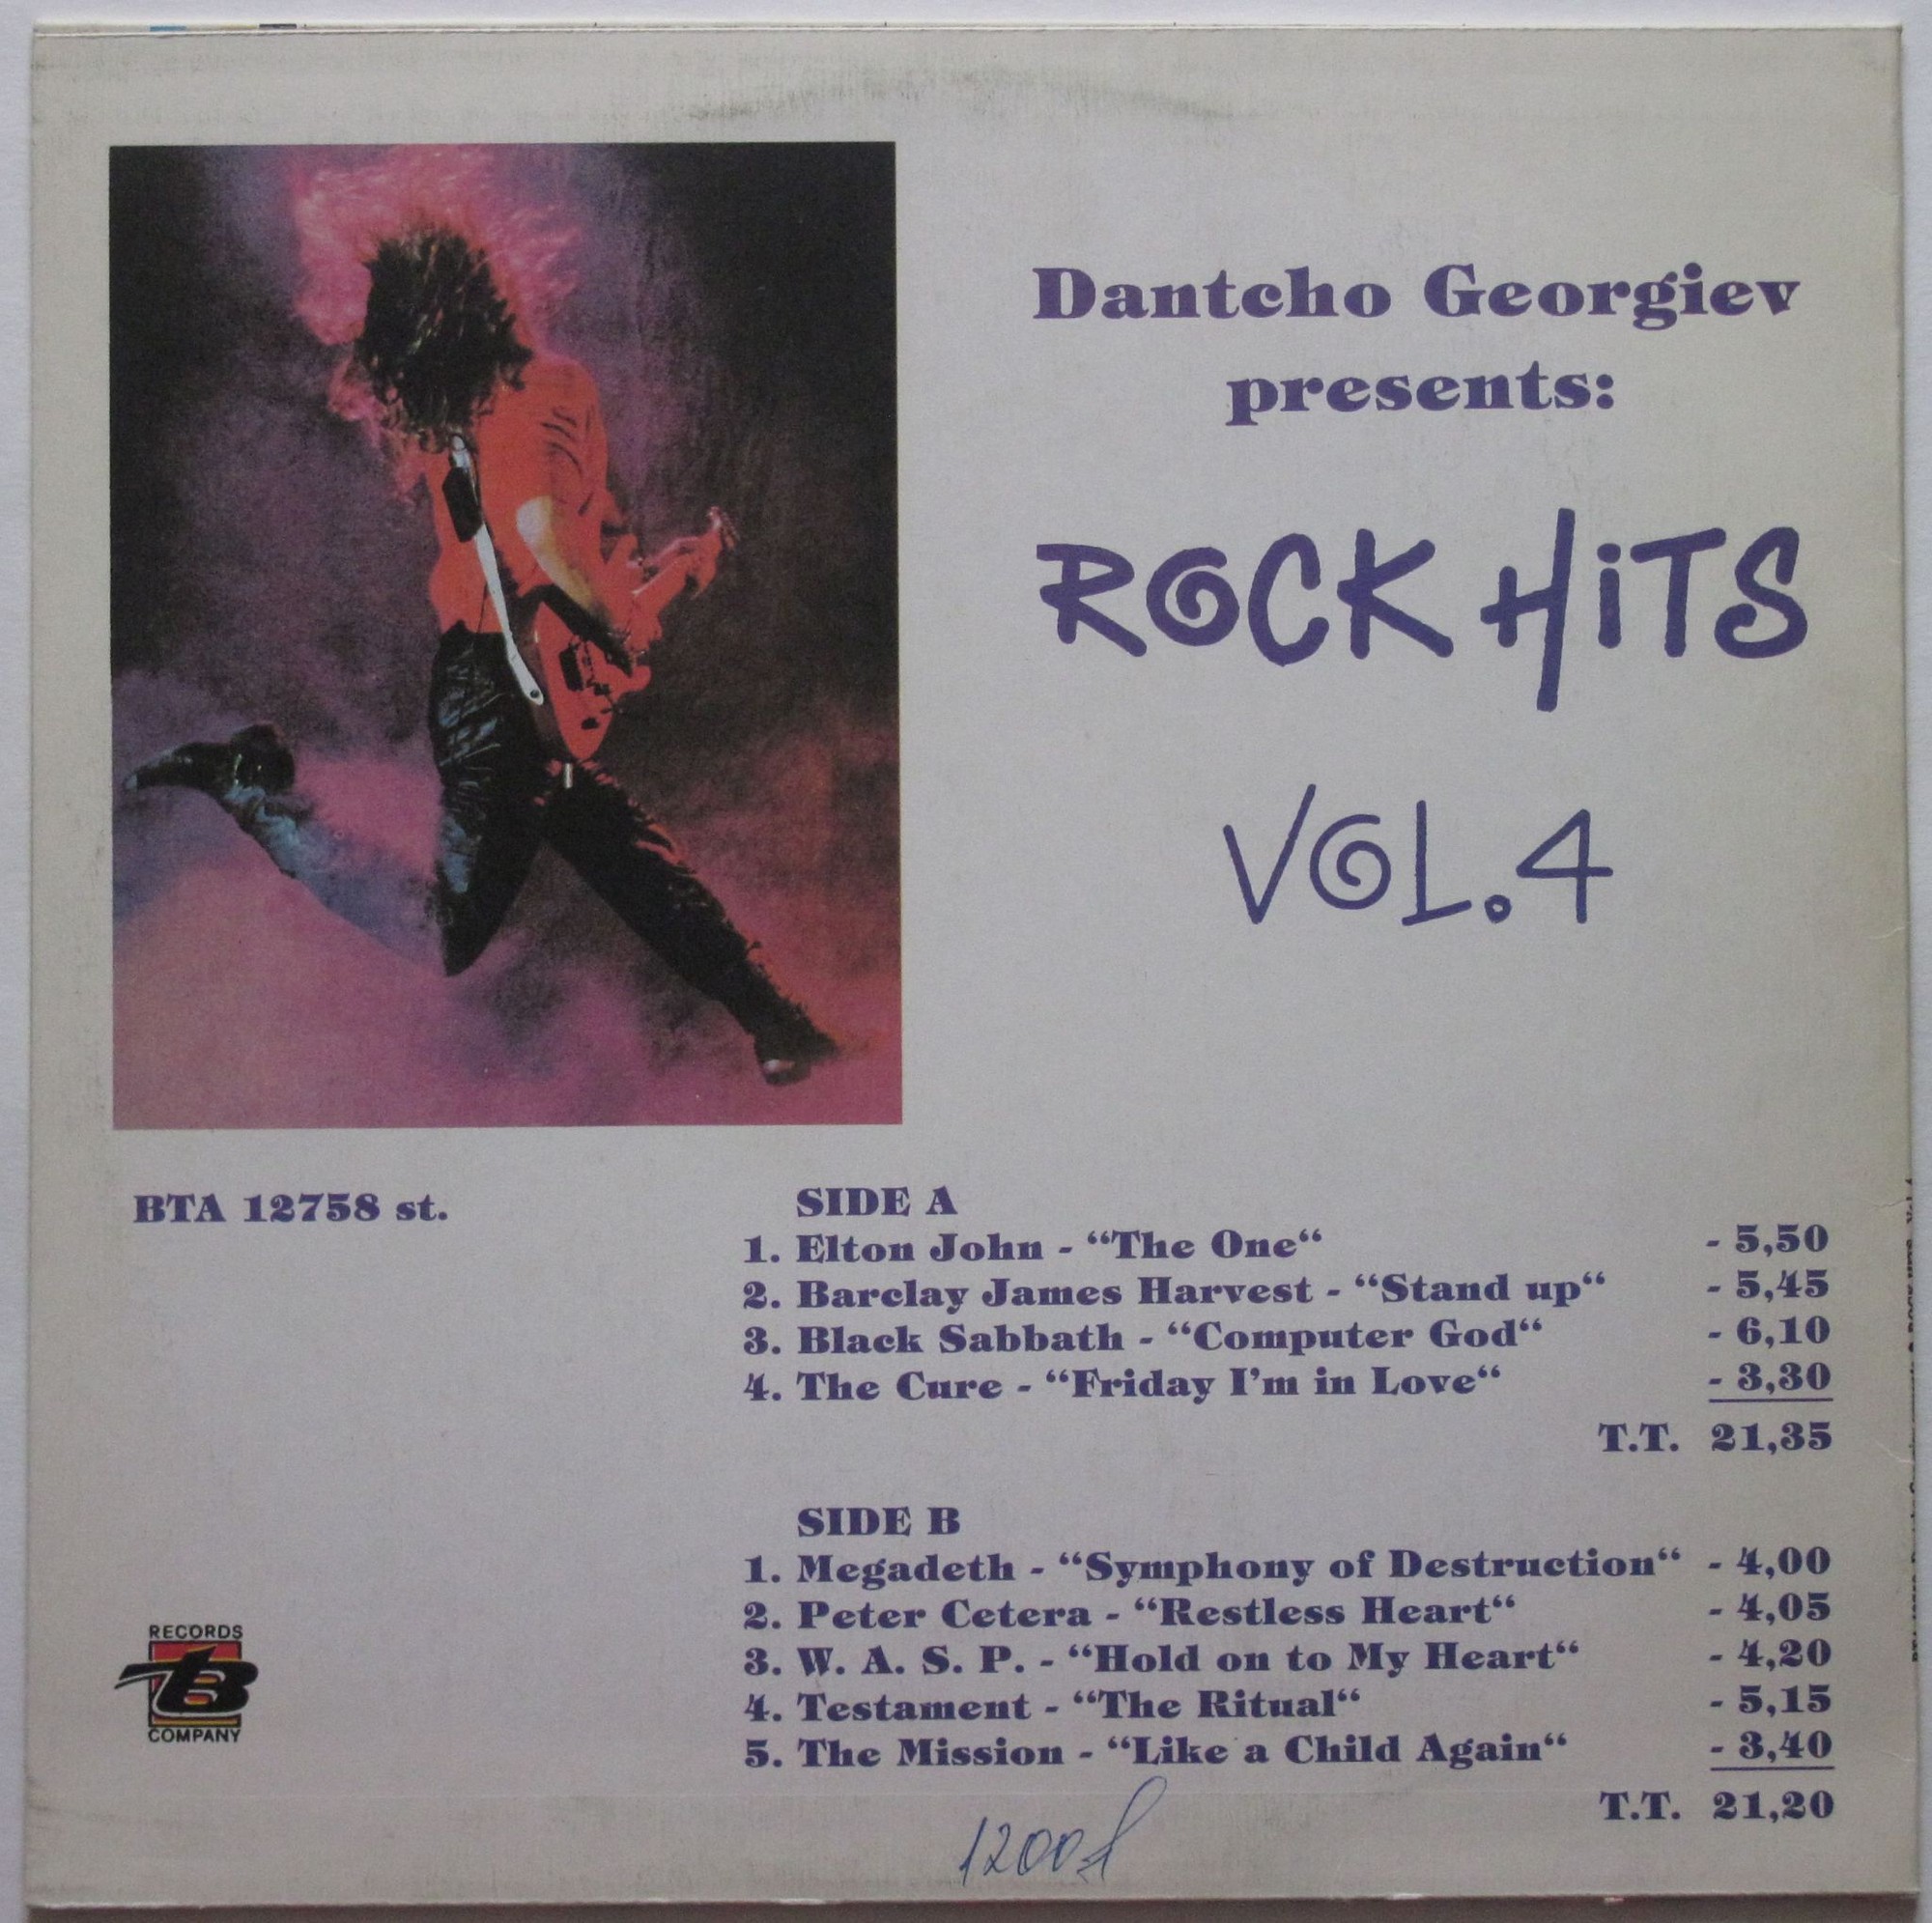 Dantcho Georgiev presents: Rock hits. Vol. 4